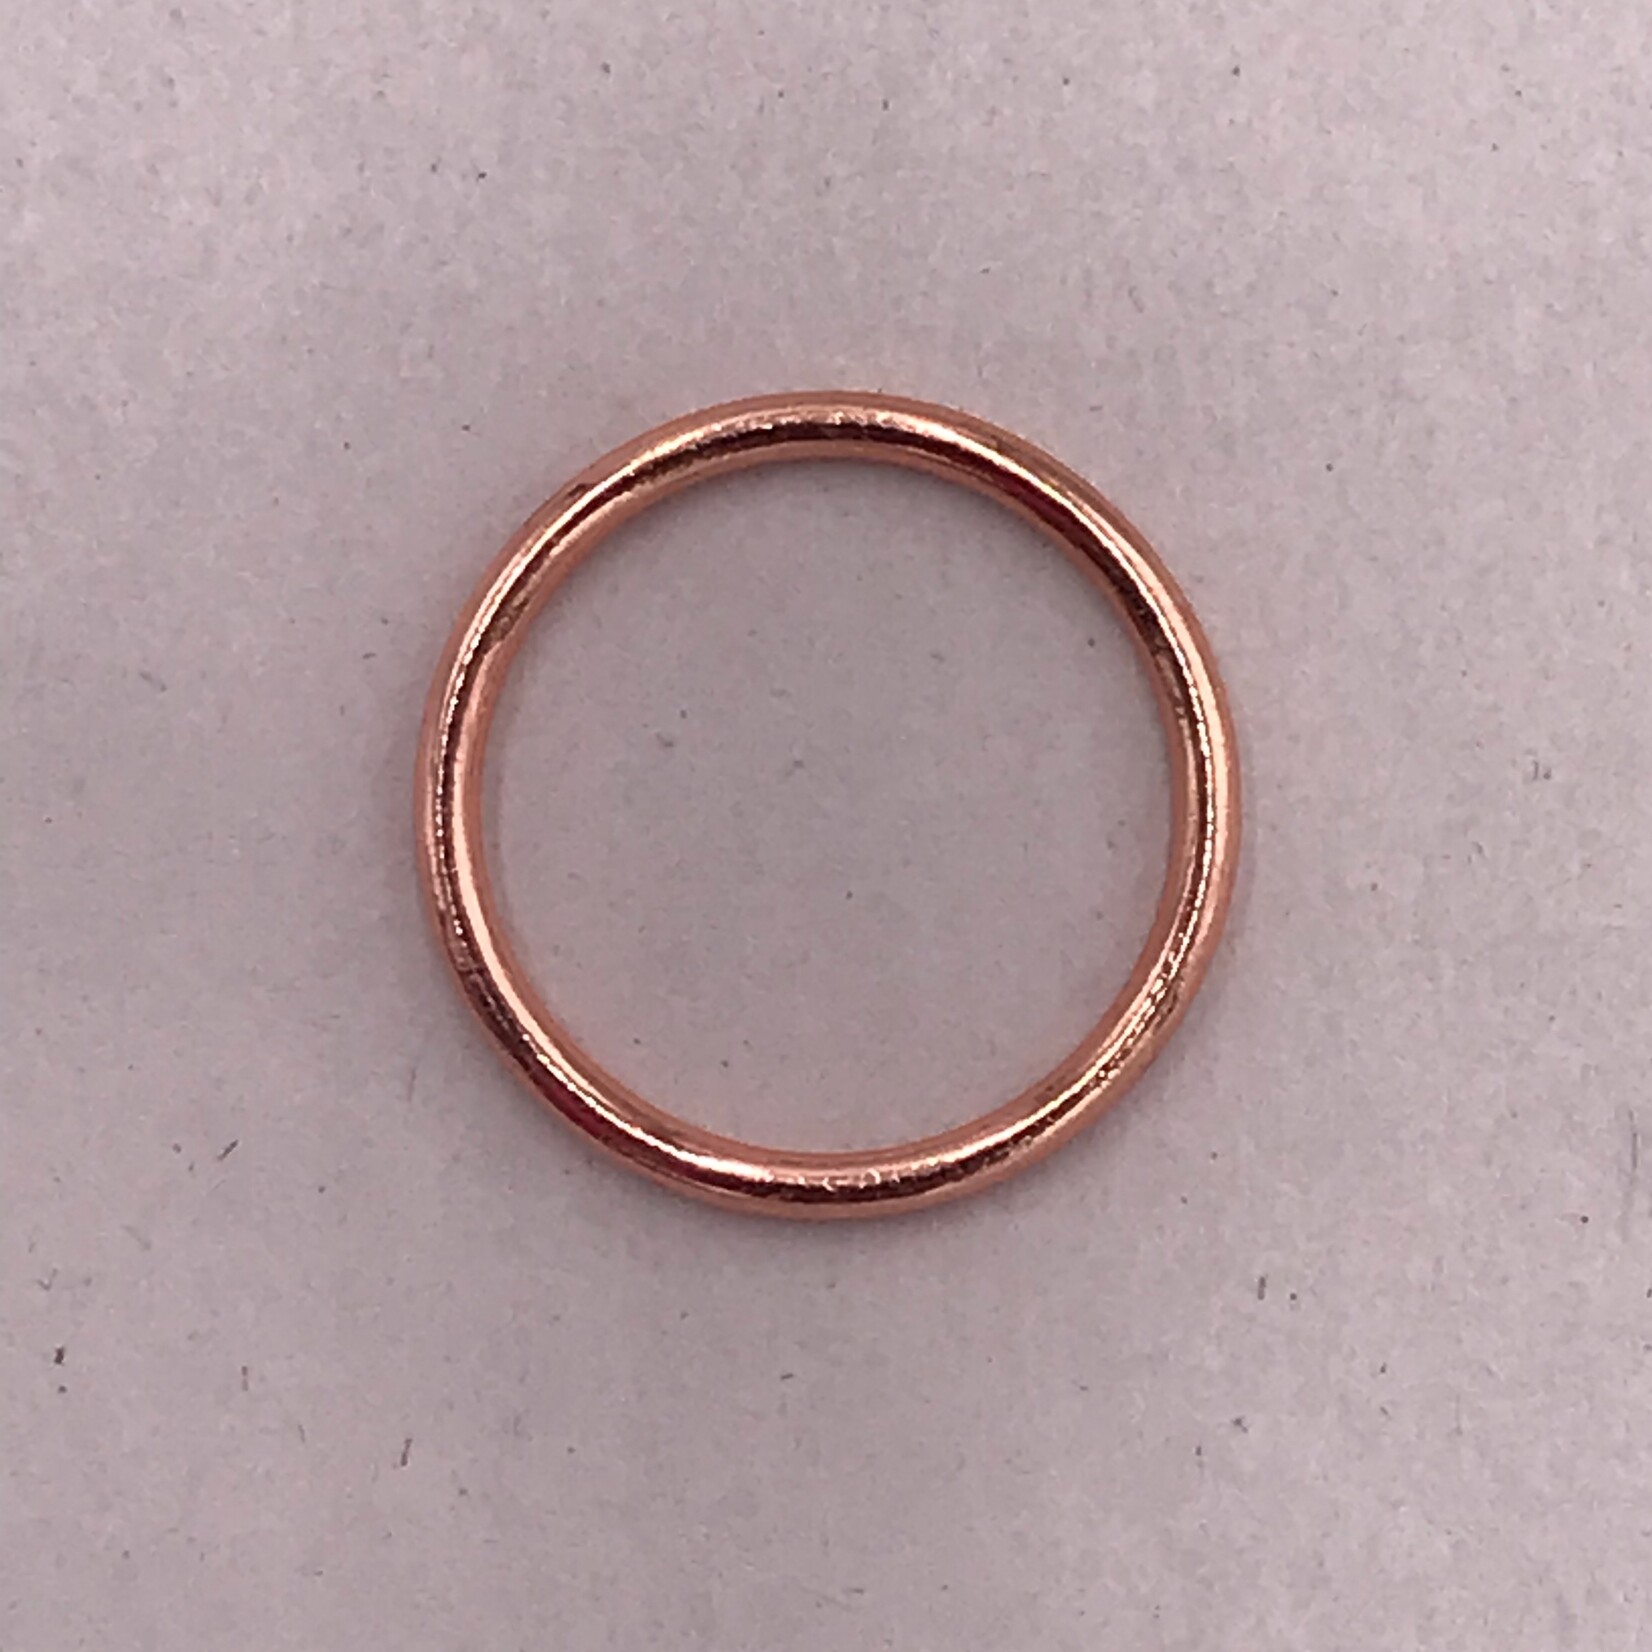 BRA O-RINGS (16MM) 5/8 INCH (50PCS/PACK) - ROSE GOLD